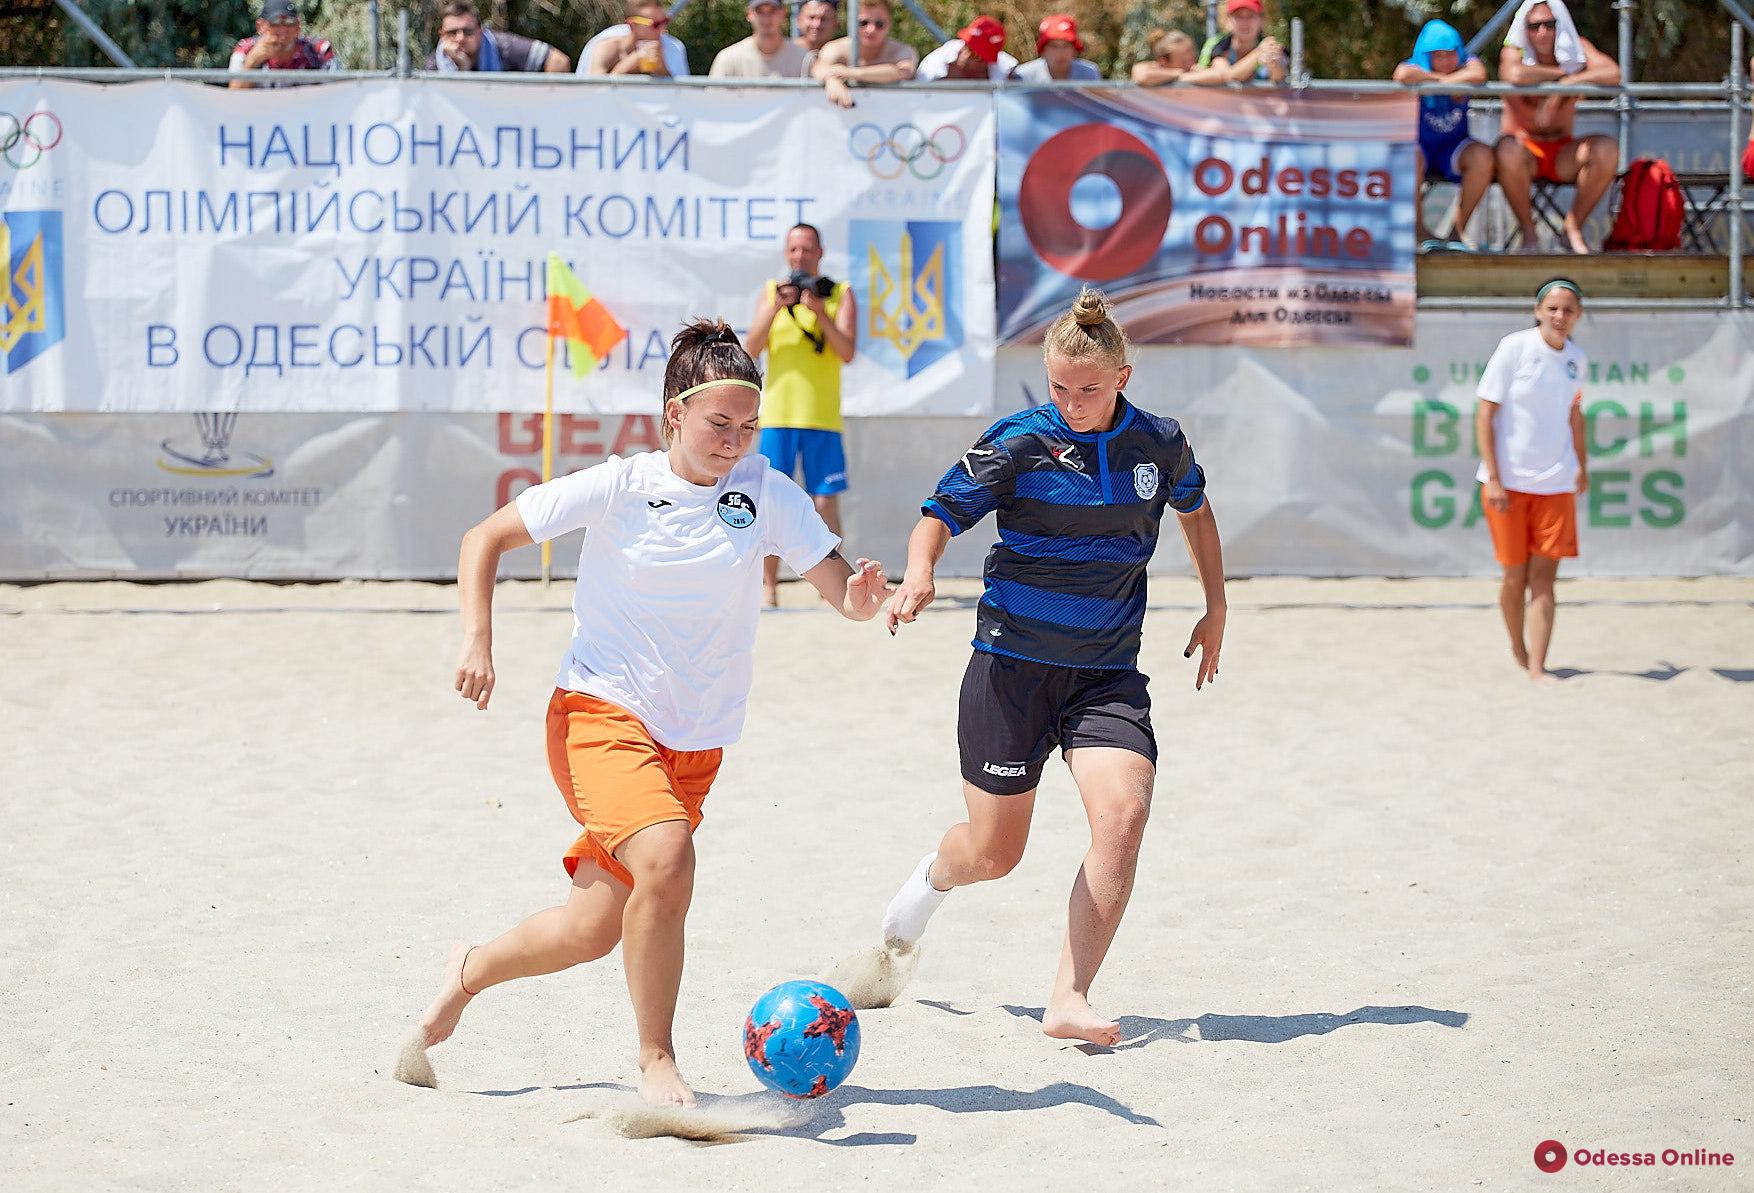 Футбол и красота: в Одессе пройдет чемпионат Украины по пляжному футболу среди девушек